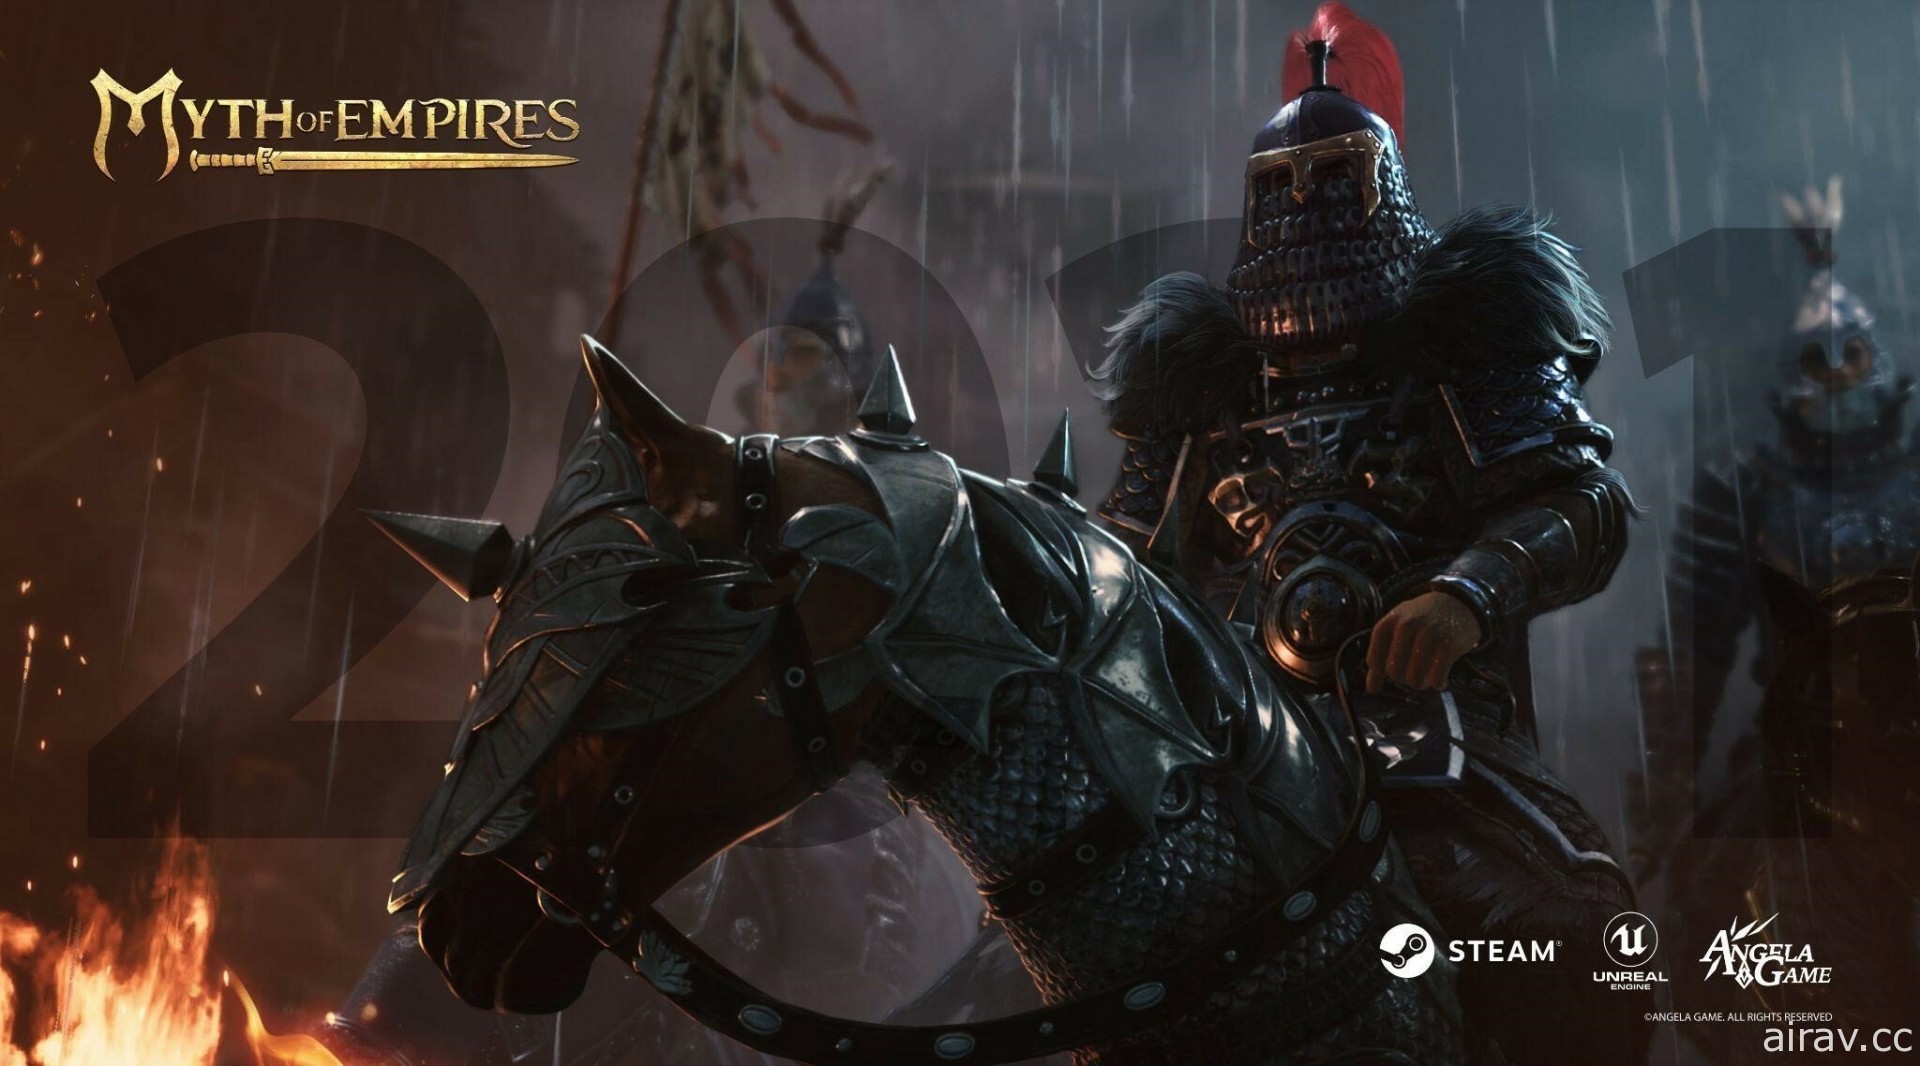 《帝国神话》被质疑侵权遭 Steam 下架 开发商提起诉讼希望争取恢复上架